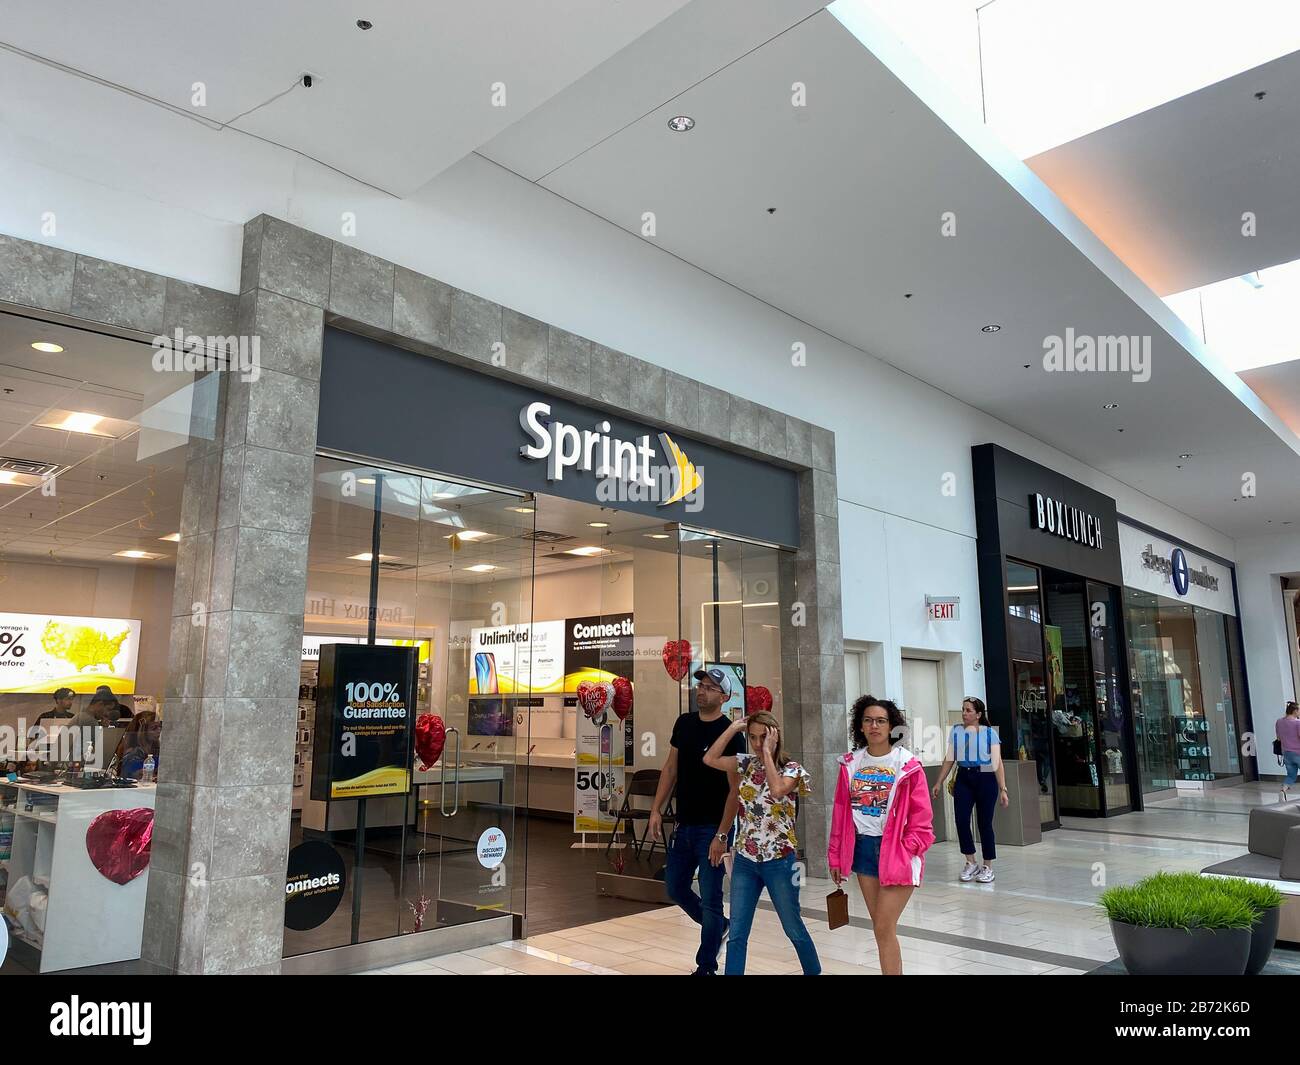 Orlando, FL/USA - 17.02.20: Ein Sprint Einzelhandelsgeschäft in einem Einkaufszentrum in Orlando, FL. Sprint, ein amerikanisches Telekommunikationsunternehmen, das drahtlose Geräte bereitstellt Stockfoto